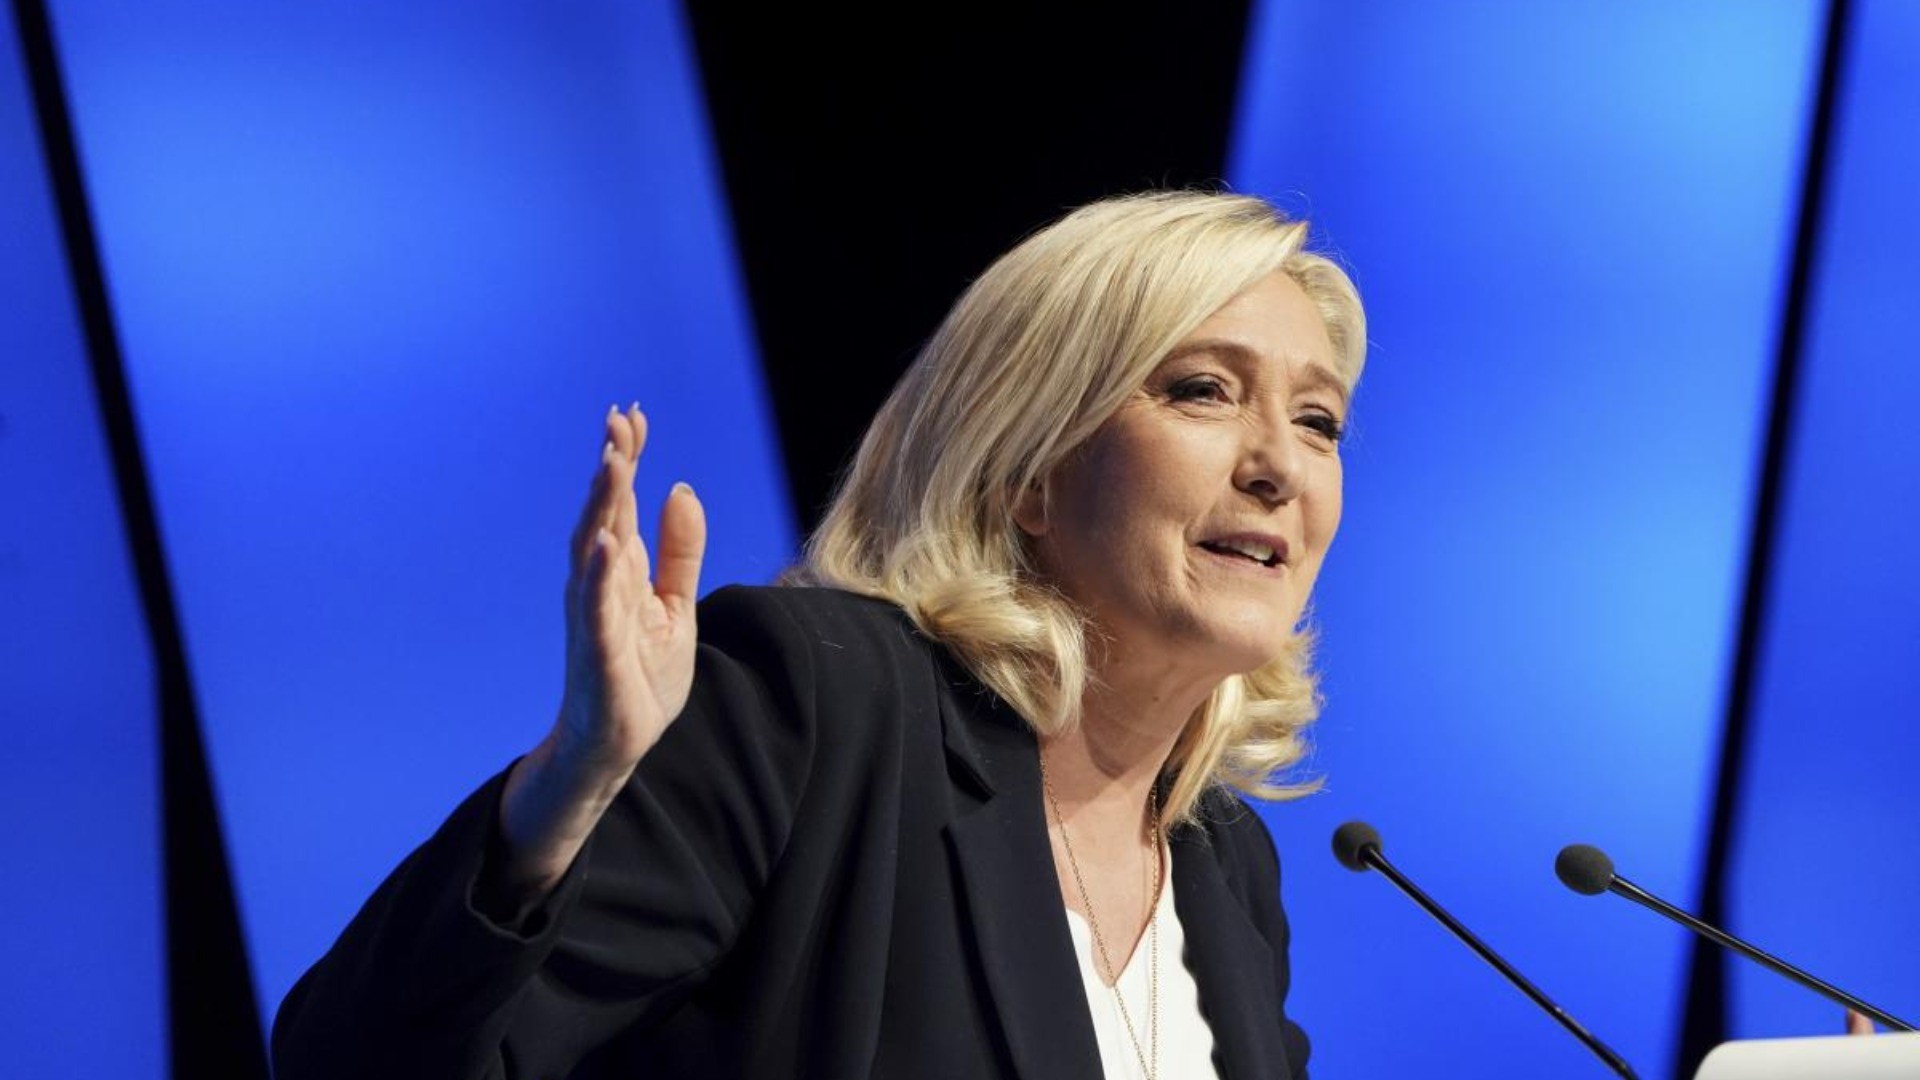 Francia, Marine Le Pen si scaglia contro le donne con il velo: "Chi lo indosserà prenderà una multa"